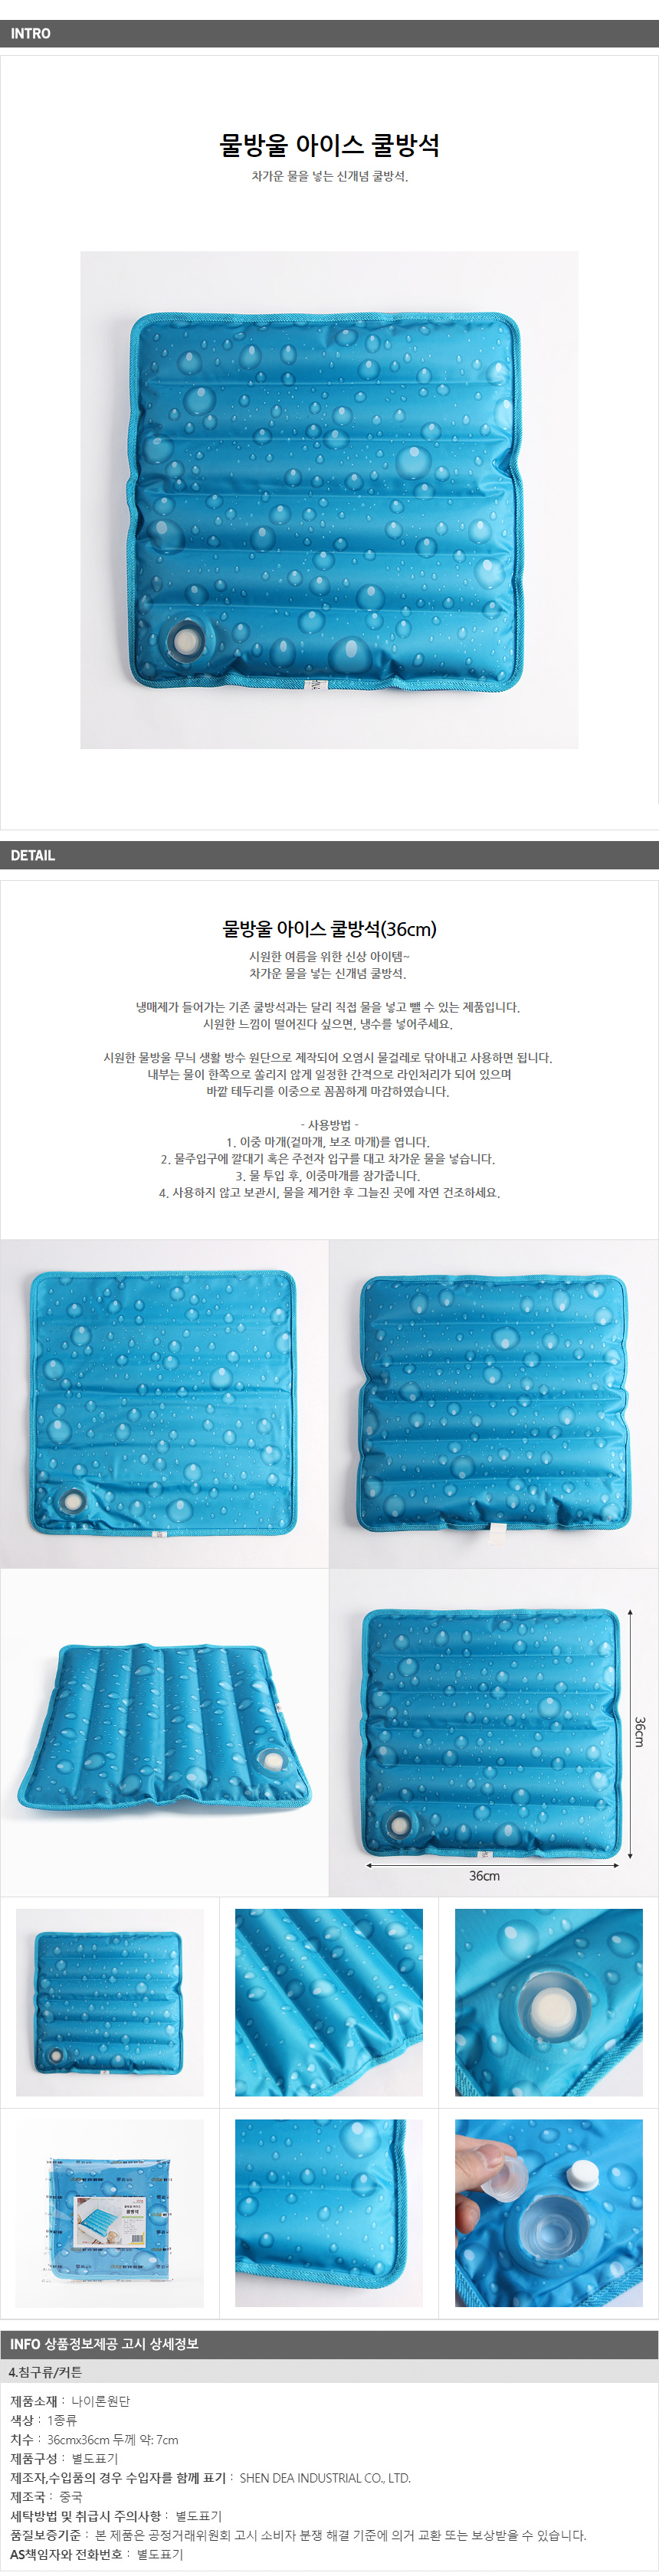 물방울 아이스 방석 /비뇨기과 의원 홍보 인쇄 쿨매트